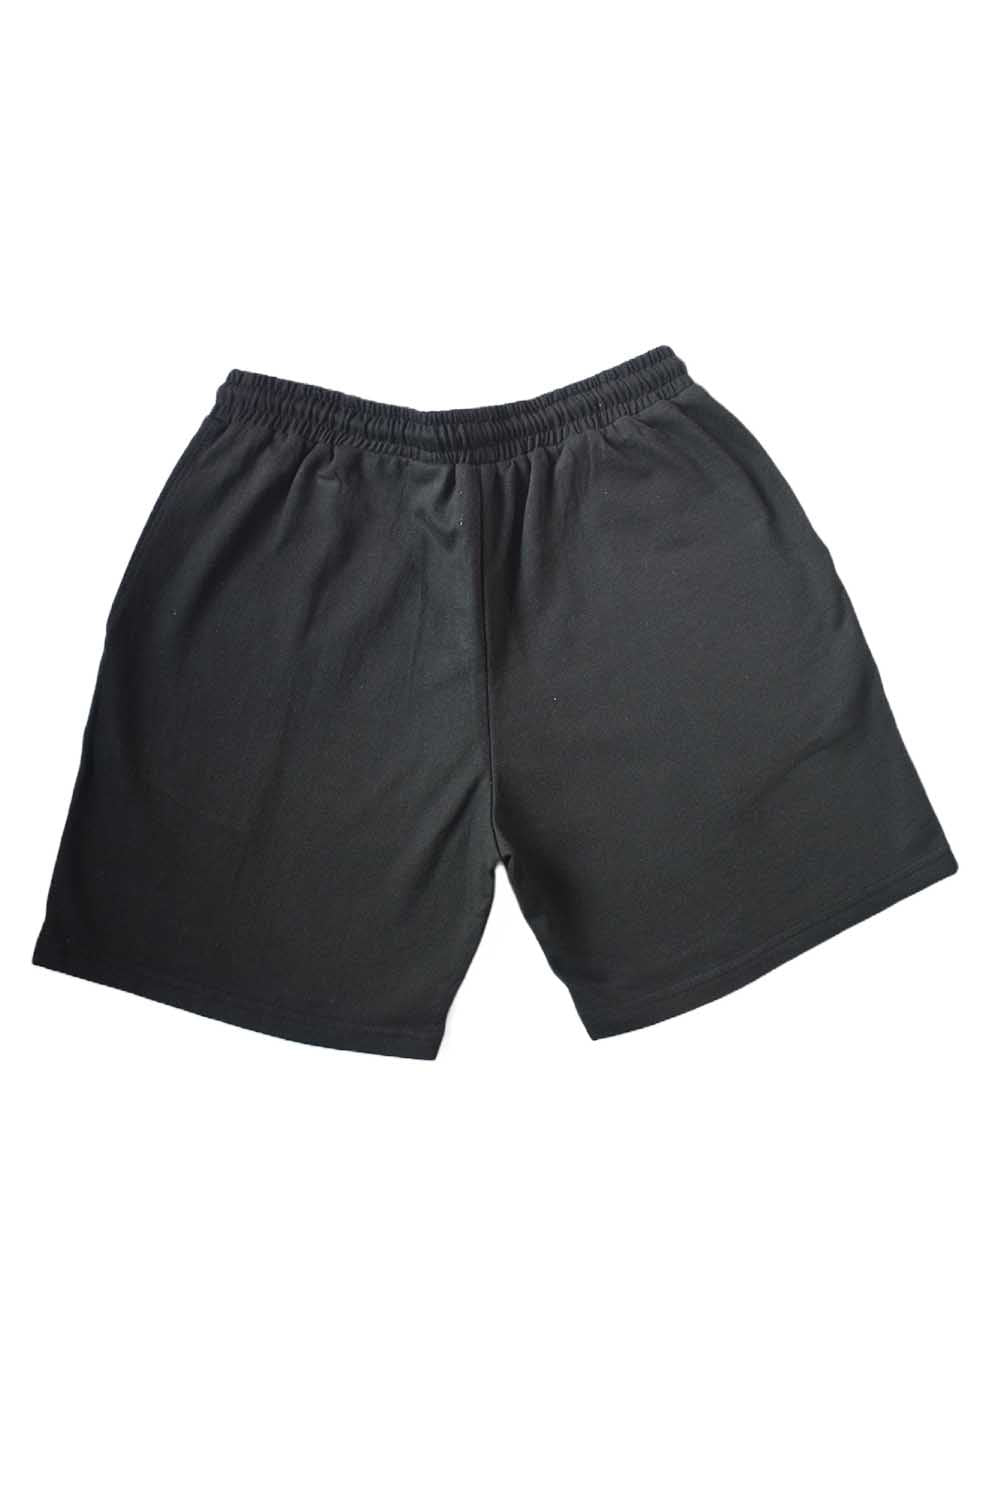 Midnight black Shorts